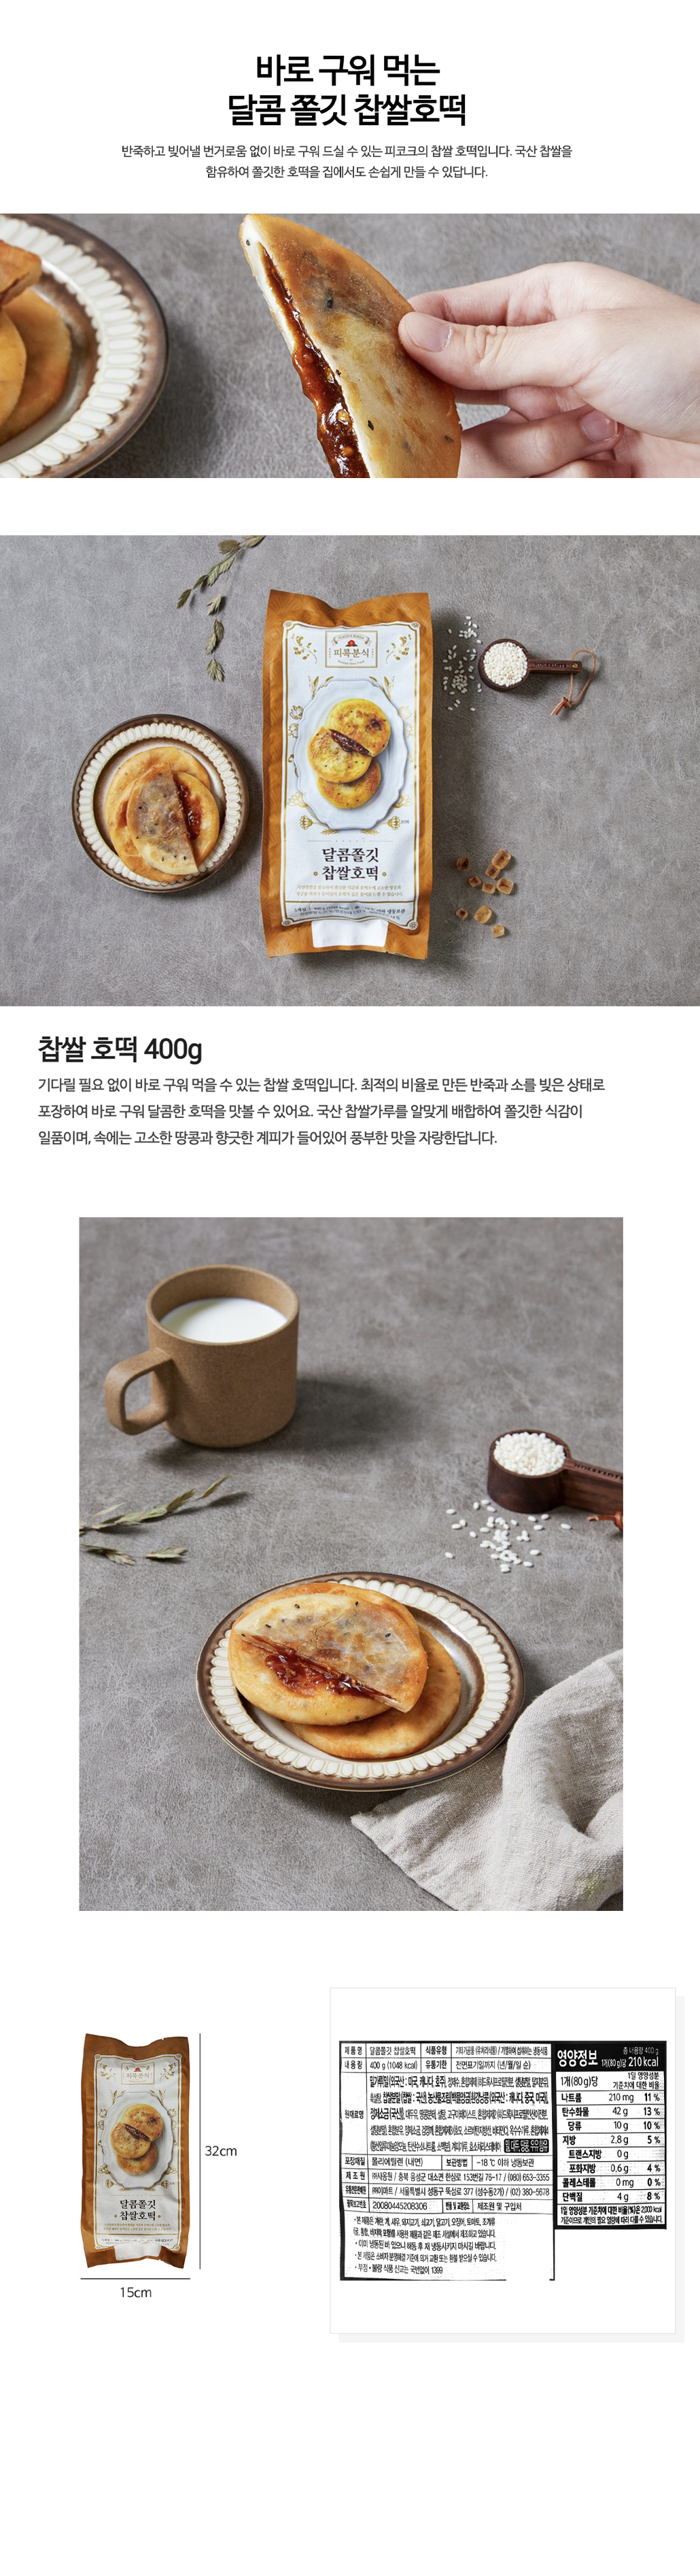 韓國食品-[Peacock] Bunsik Rice Glutinous Hotteok 400g